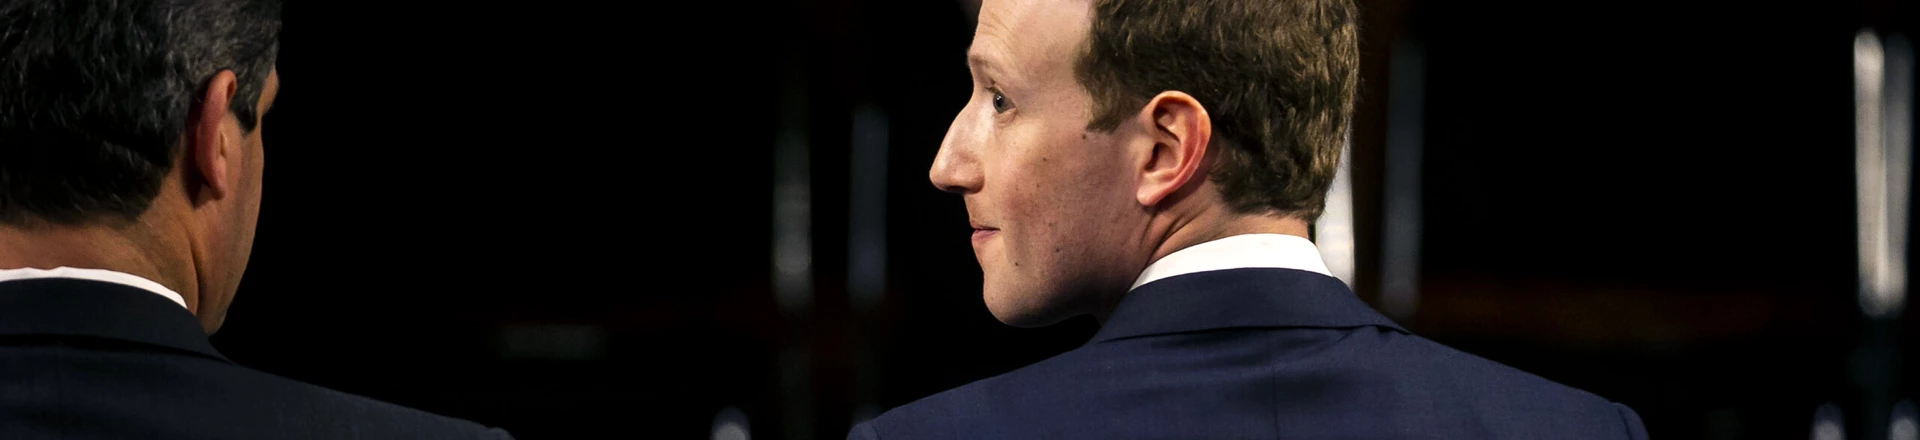 Mark Zuckerberg, CEO e fundador da empresa Facebook Inc., sai para o intervalo durante uma audiência conjunta dos comitês Judiciário e de Comércio do Senado, em Washington, D.C., em 10 de abril de 2018.